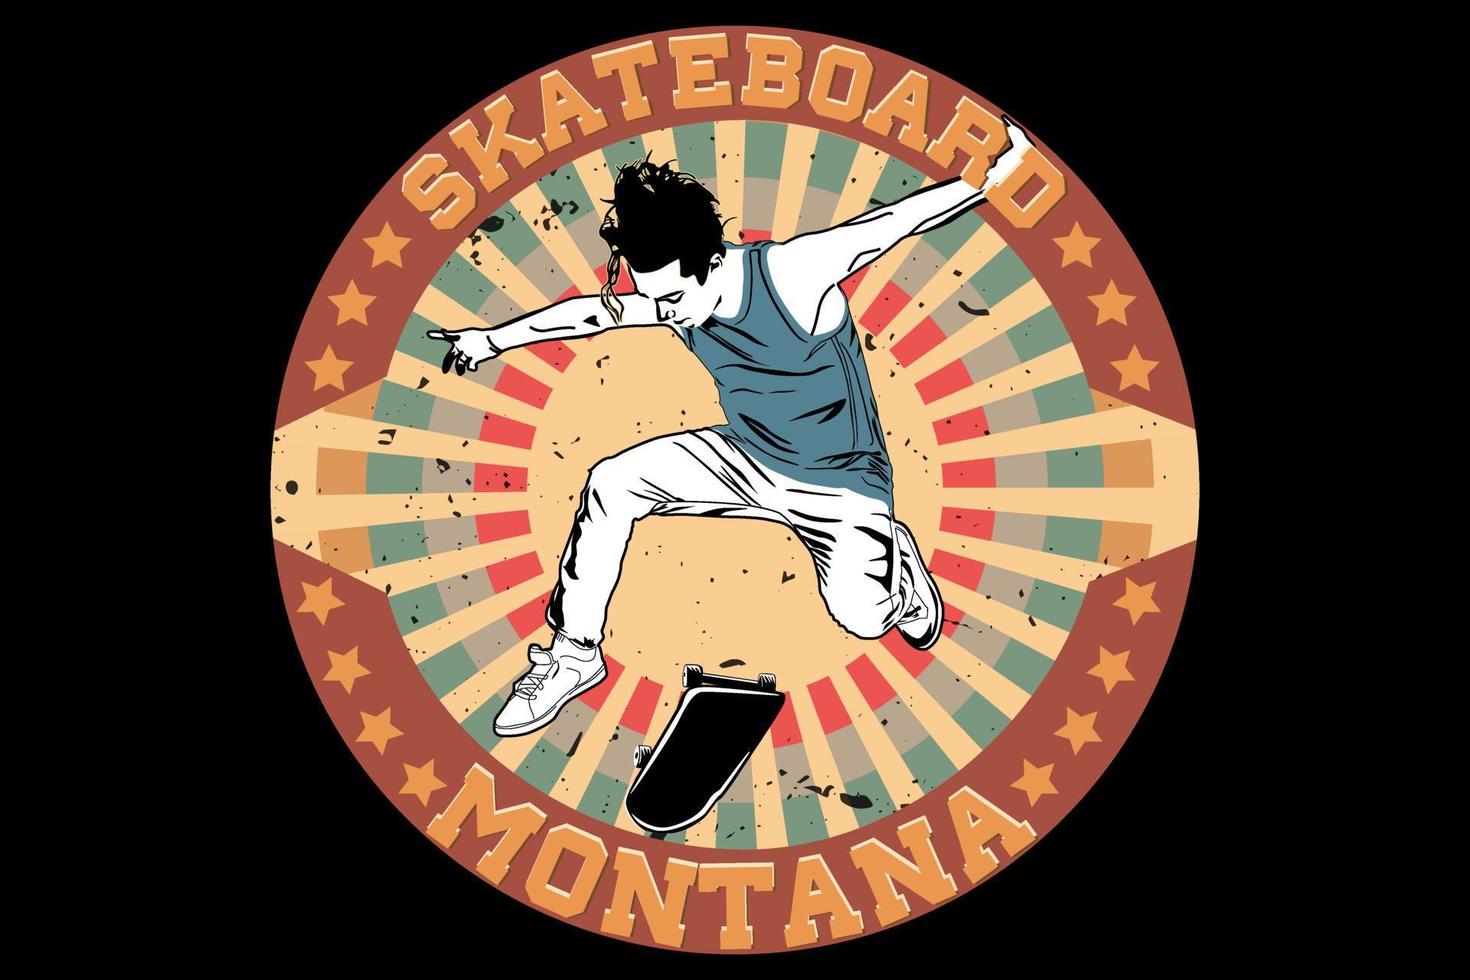 skateboard montana retro vintage design vector